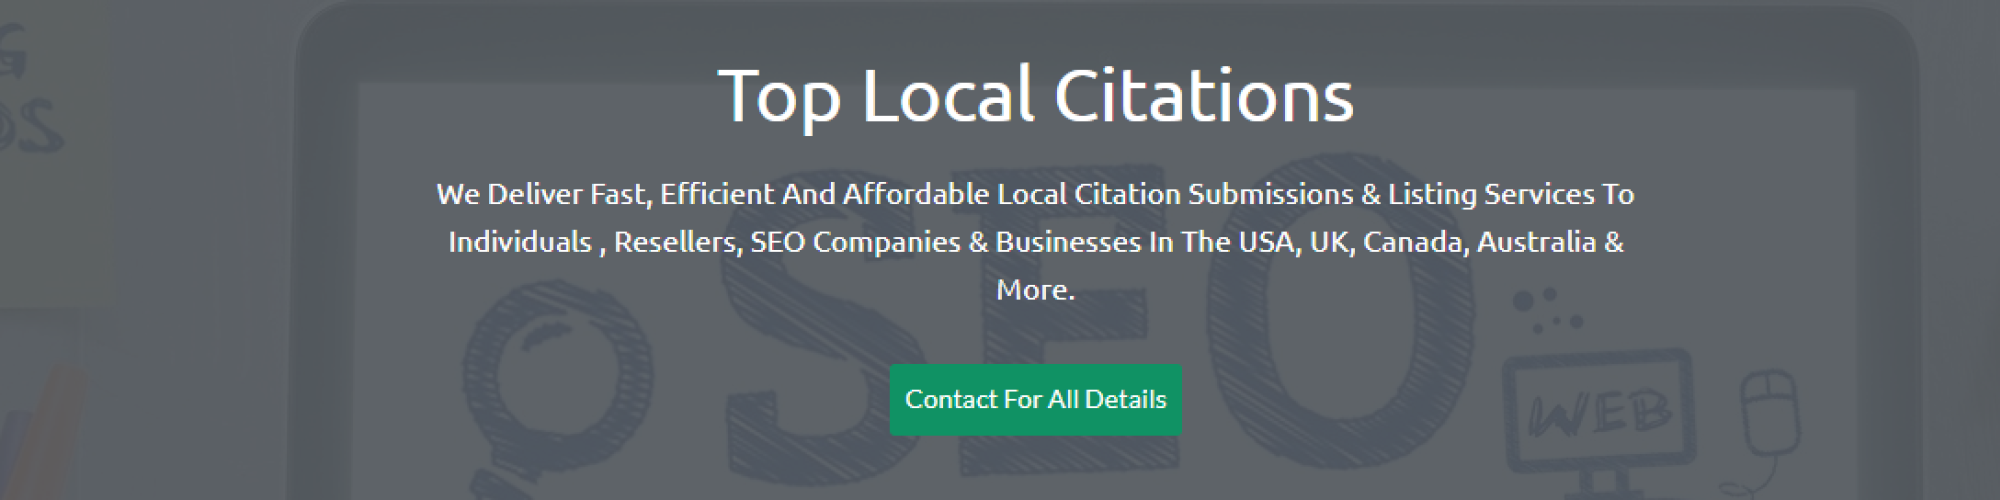 Top Local Citations